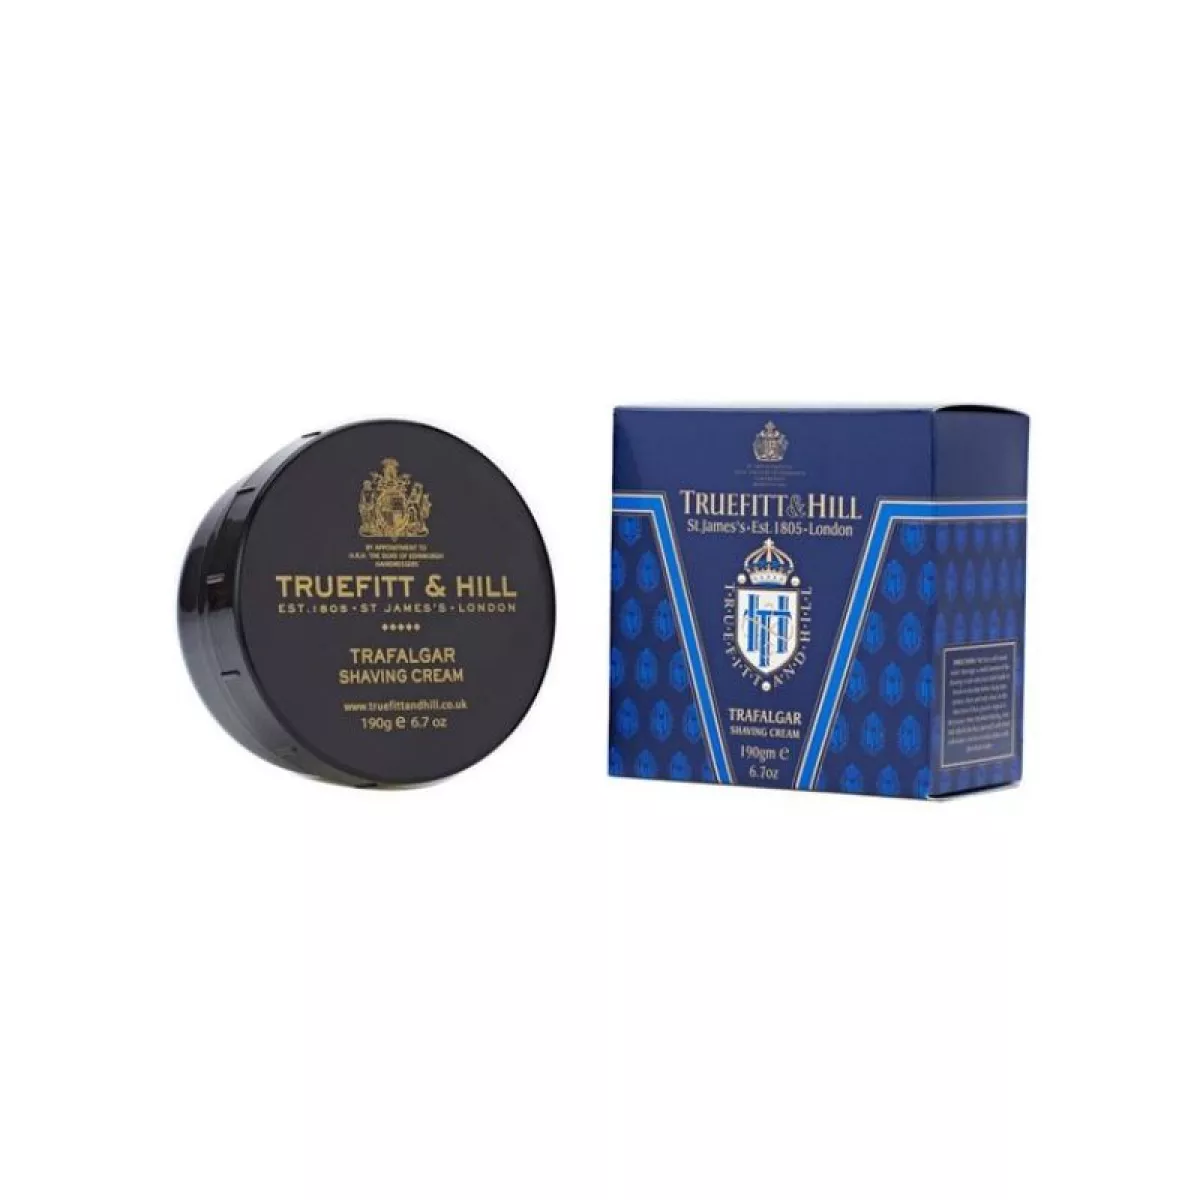 #1 - Truefitt & Hill - Trafalgar Shaving Cream (190g)